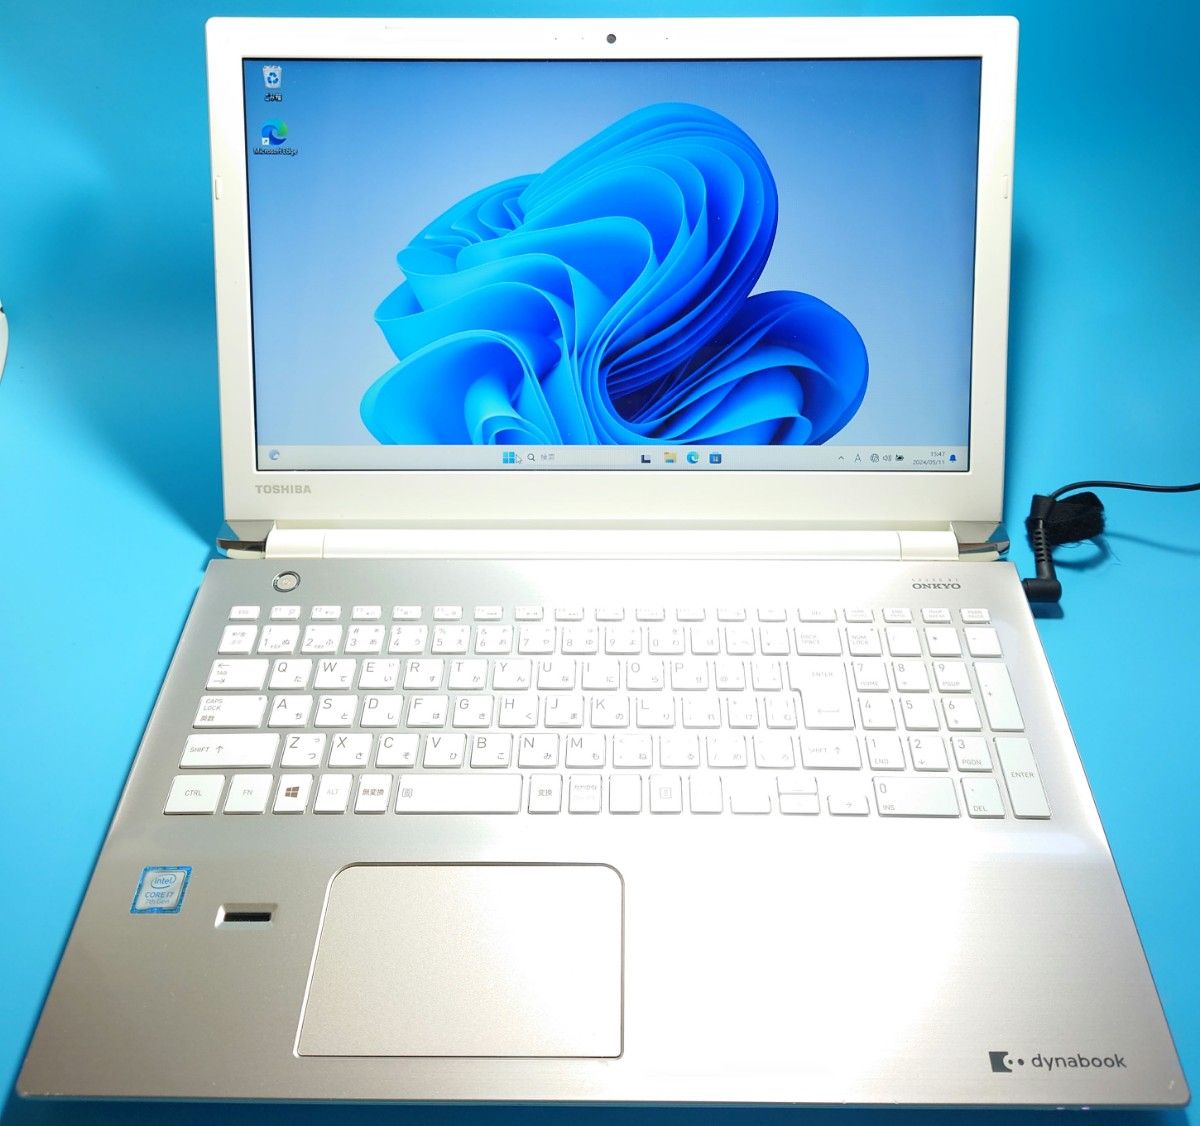 東芝 dynabook T75/CG Core i7 7500U SSD 1TB Windows11 Office2021